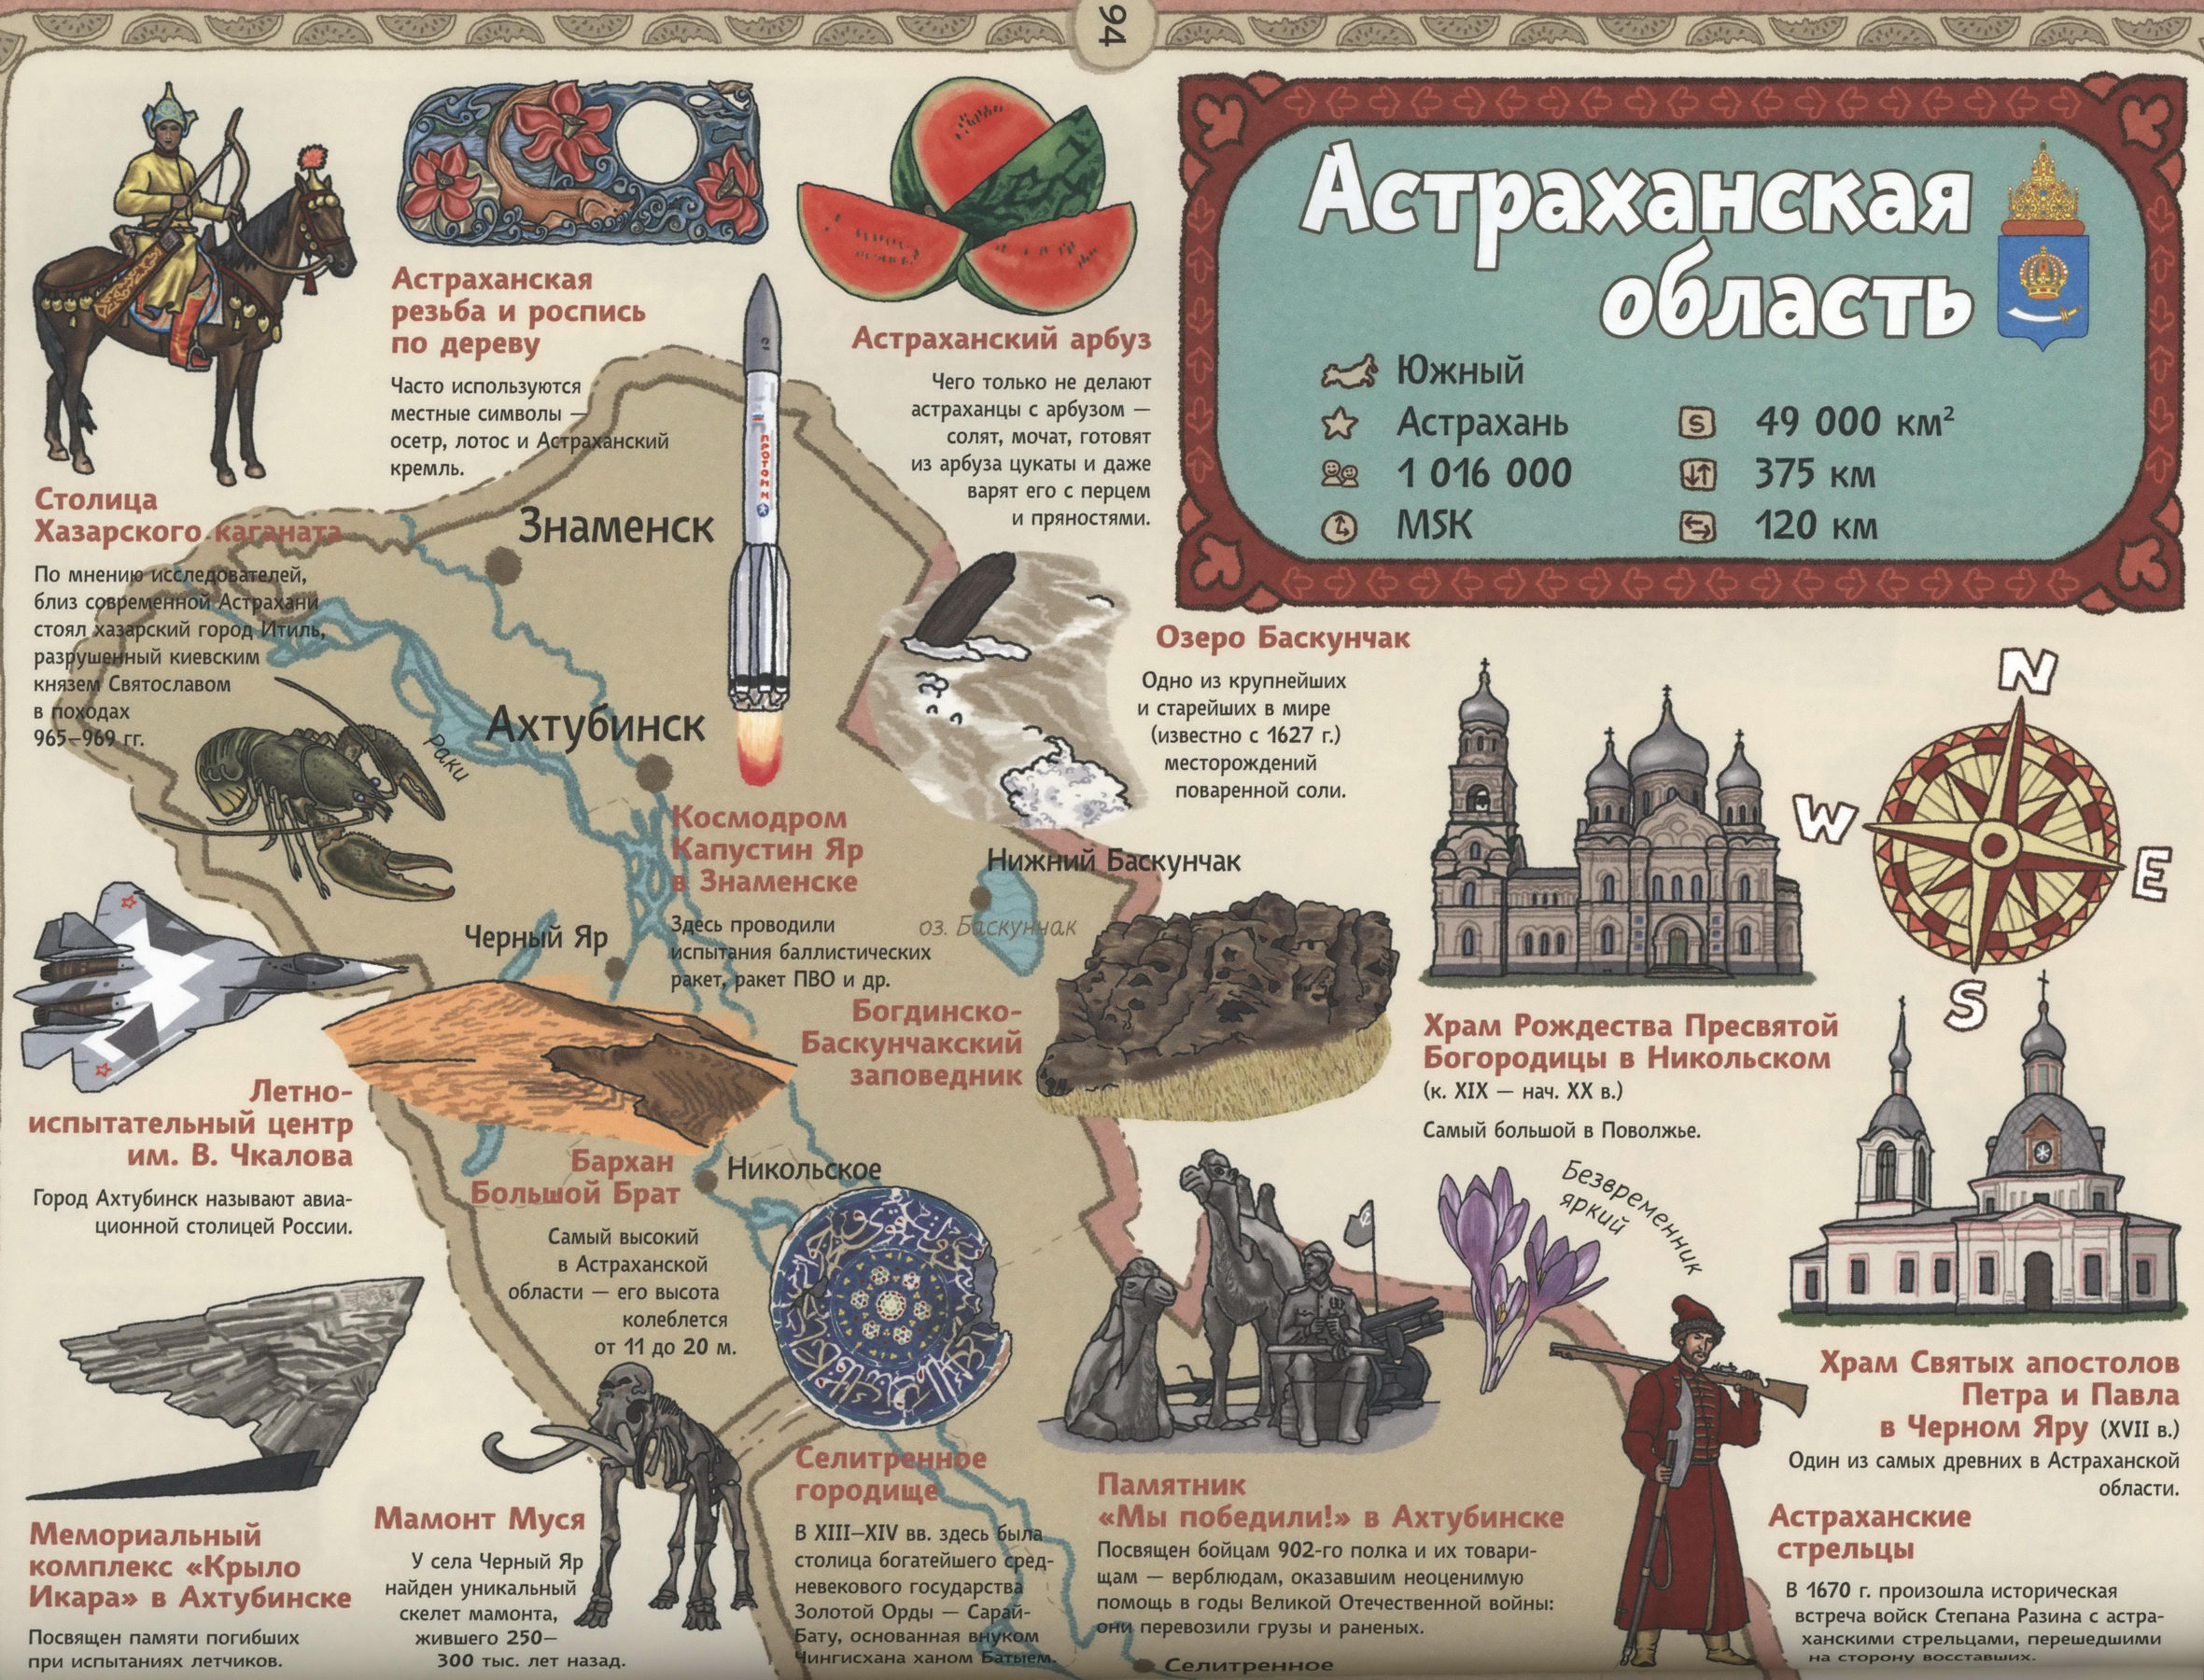 Достопримечательности города Астрахань и Астраханской области